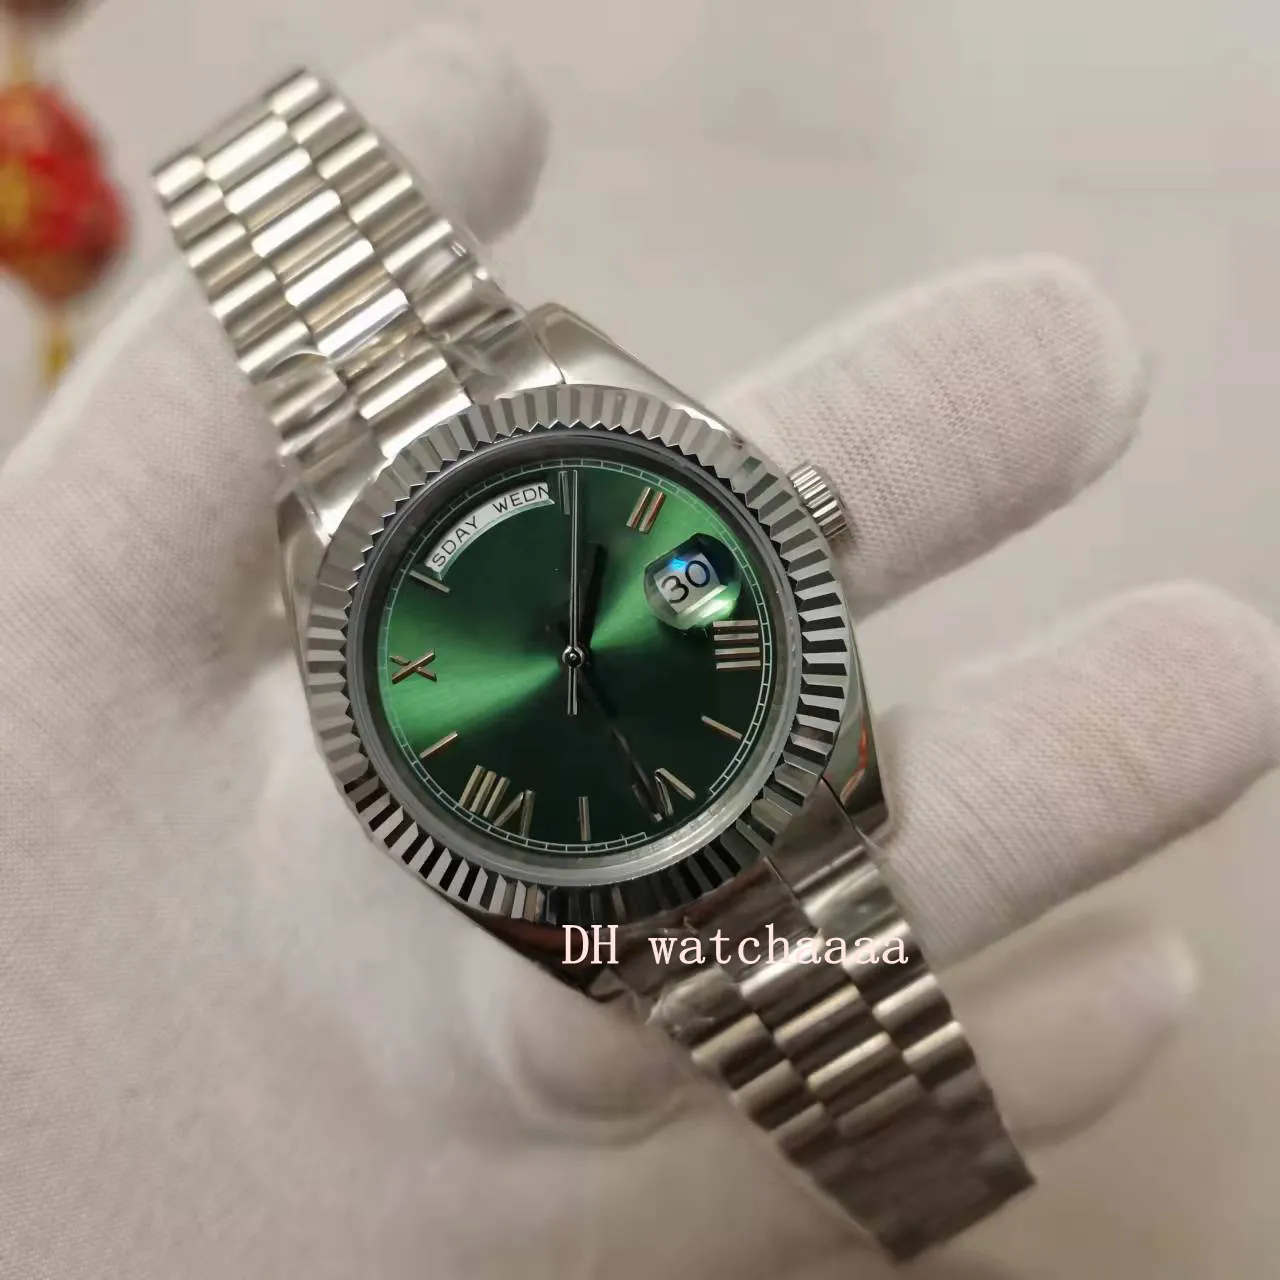 Vente chaude BP Factory Watch 40mm 2813 Mouvement automatique 228239 Cadran vert Verre saphir Lumineux Bracelet de montre en acier inoxydable pour hommes